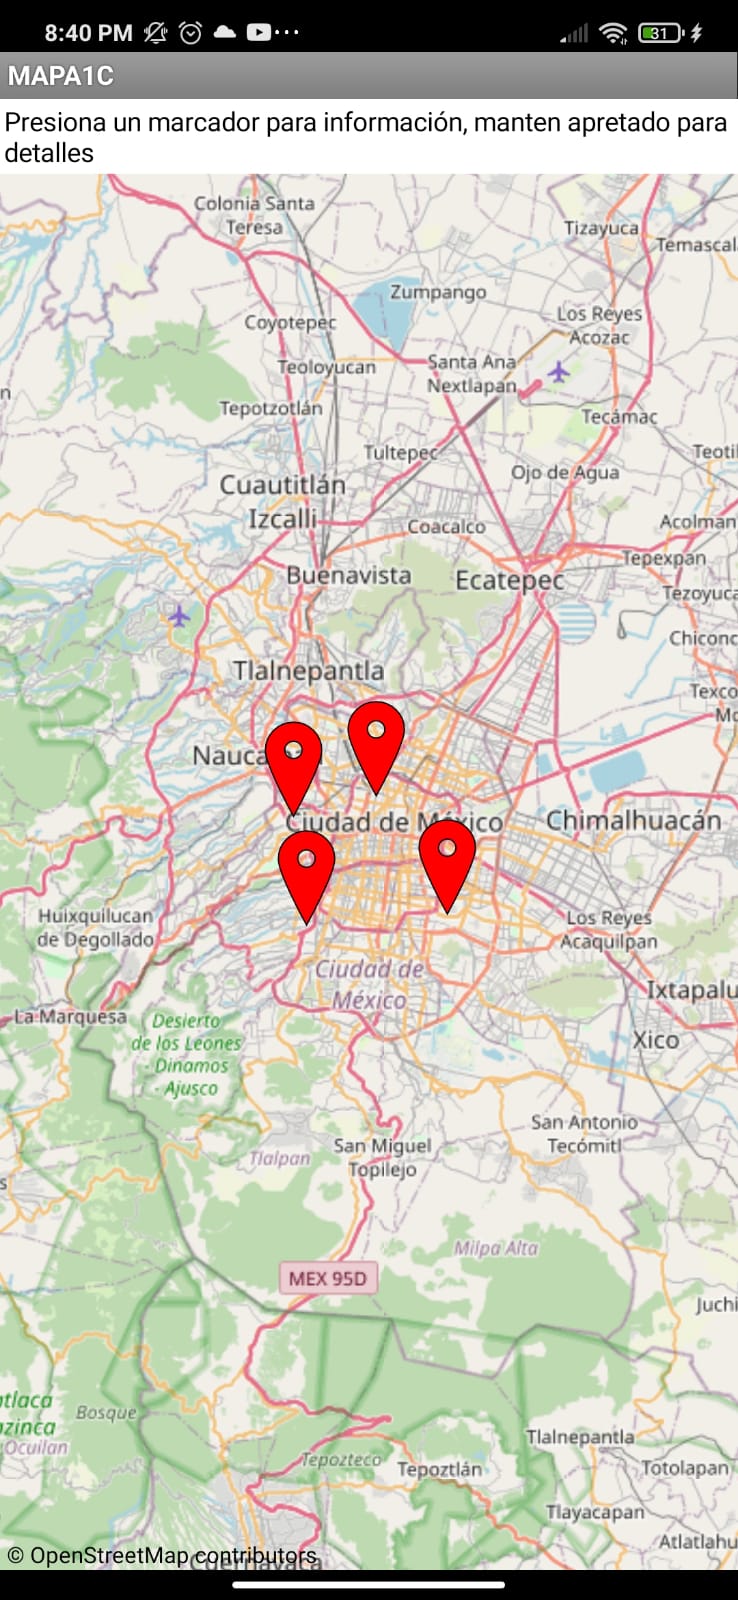 Mapa con puntos en color rojo para indicar ubicaciones en el mismo